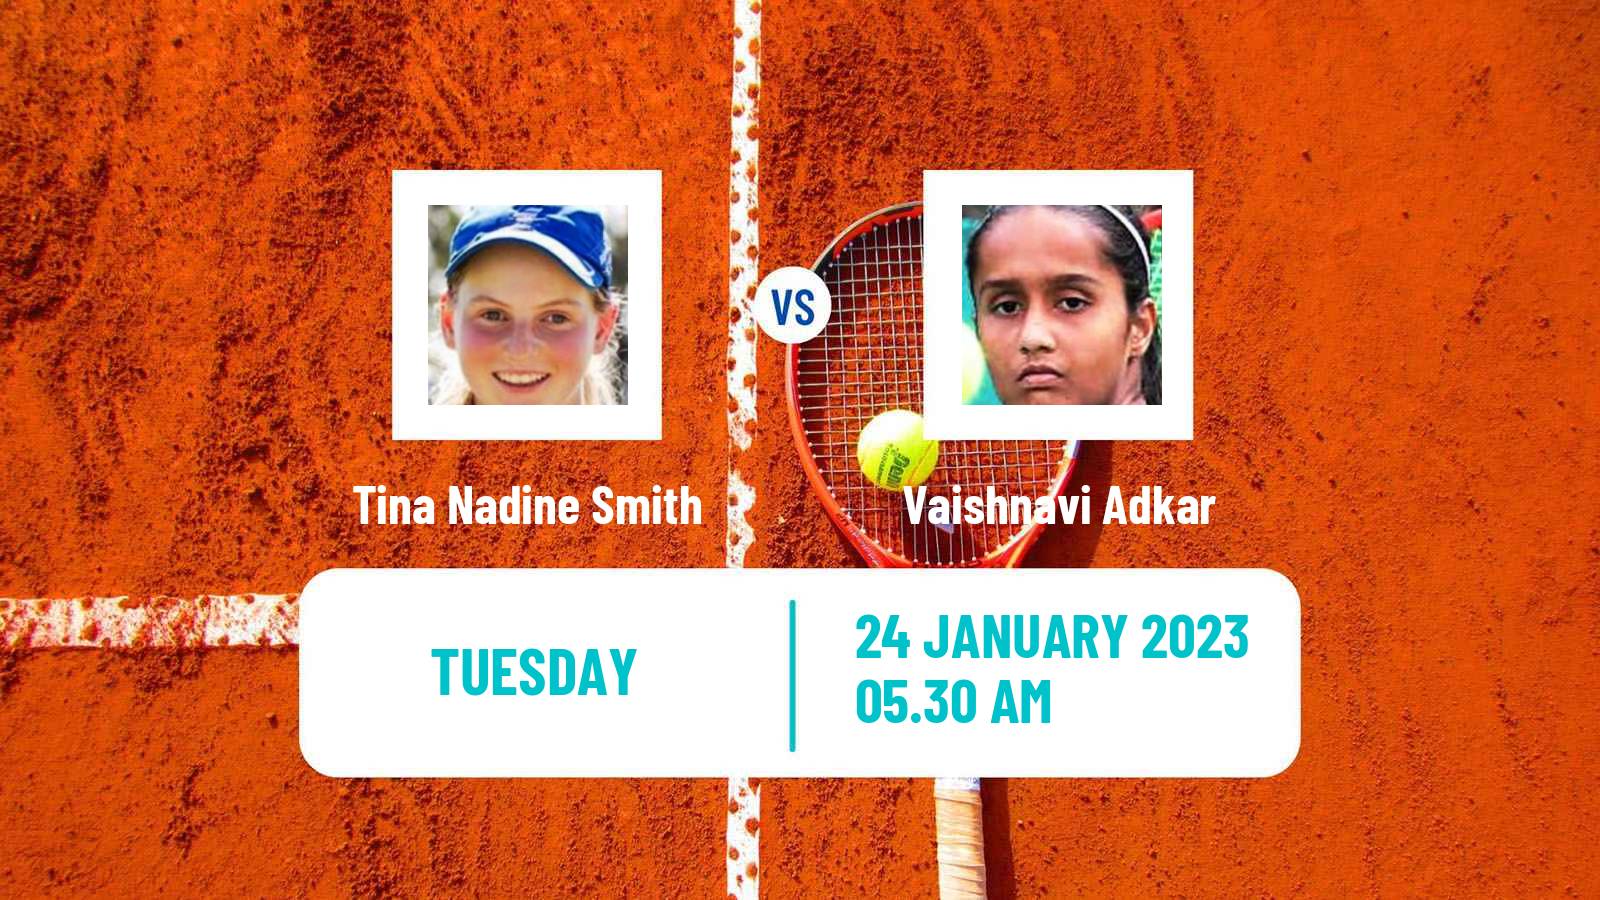 Tennis ITF Tournaments Tina Nadine Smith - Vaishnavi Adkar